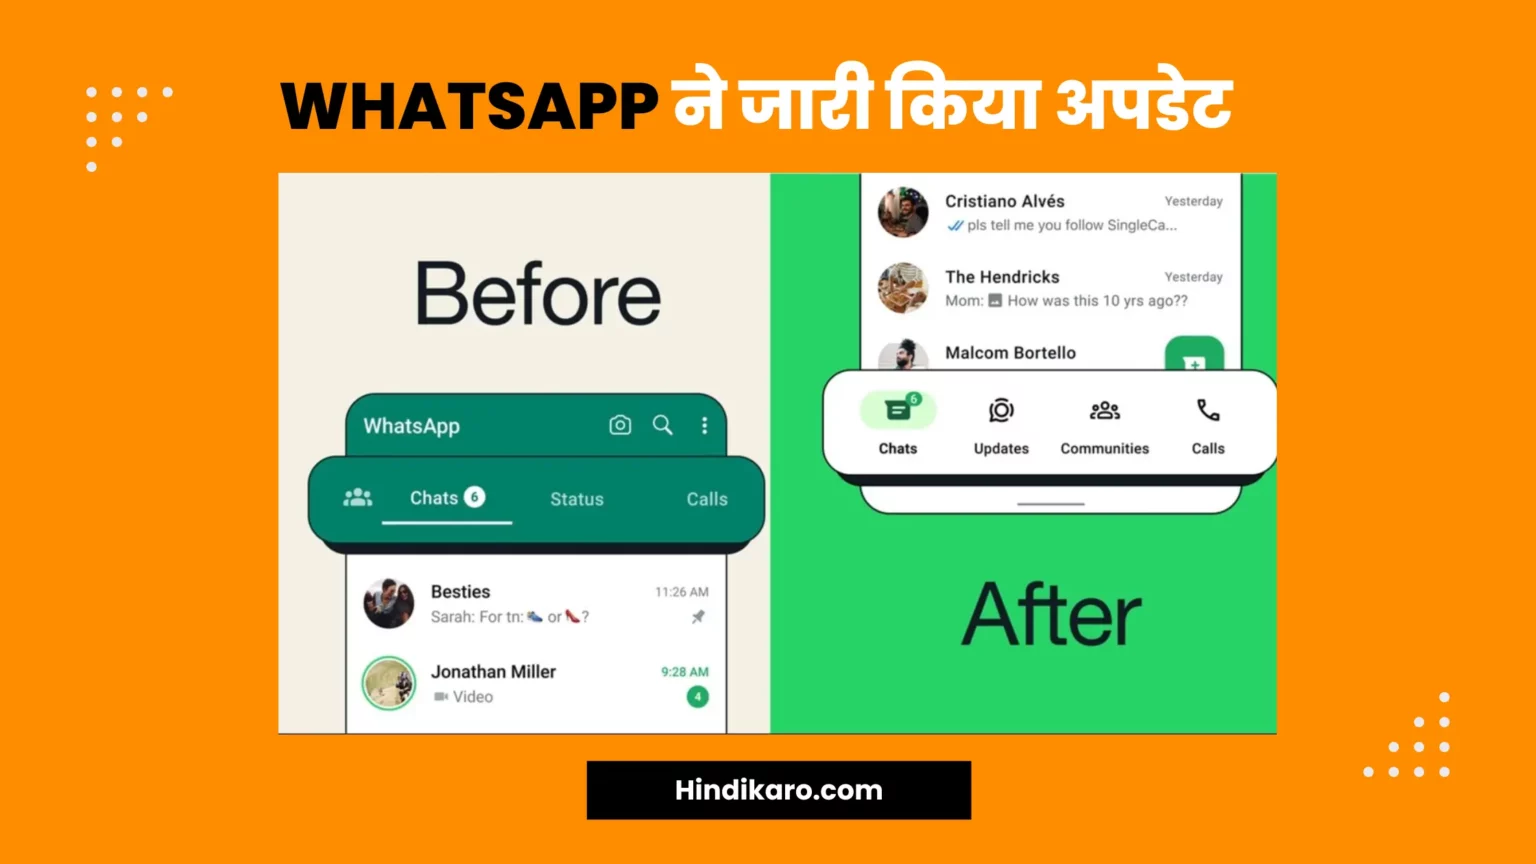 WhatsApp ने जारी किया अपडेट, पूरी तरह से बदल गया है लुक, मिलेंगे नए फीचर्स